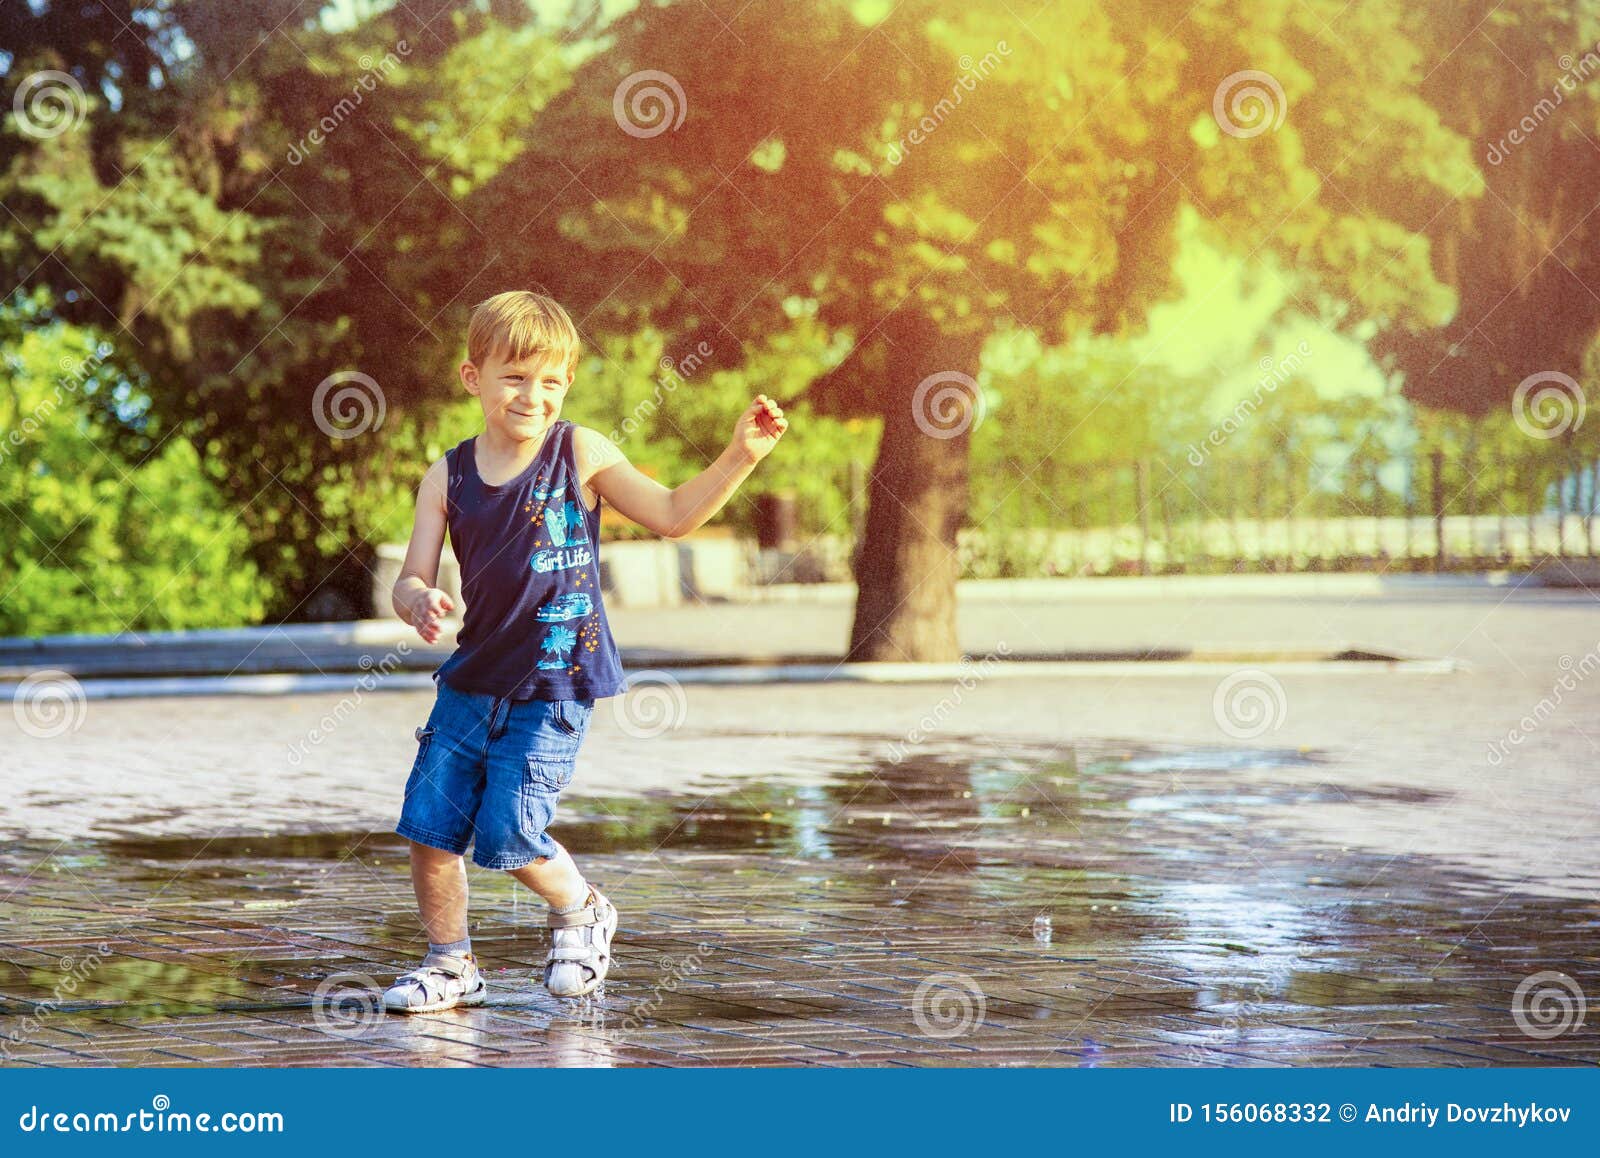 胶靴和跳跃在水坑的雨衣裳的孩子 库存图片. 图片 包括有 行程, 愉快, 公园, 年轻, 嬉戏, 天气, 夏天 - 92883569